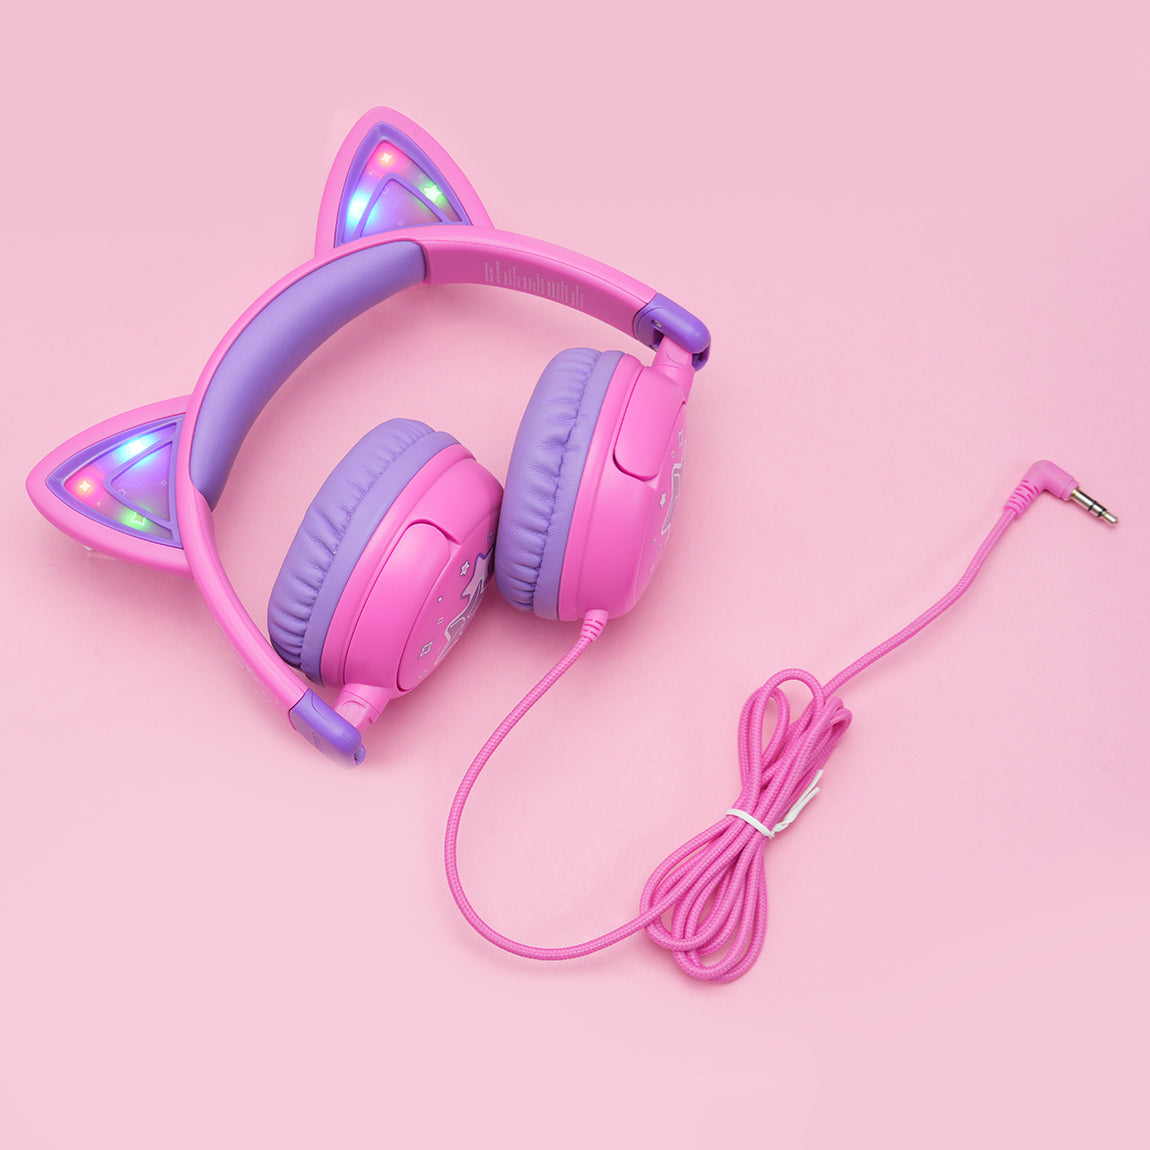 iClever Cat Ear Kids Headphones HS25